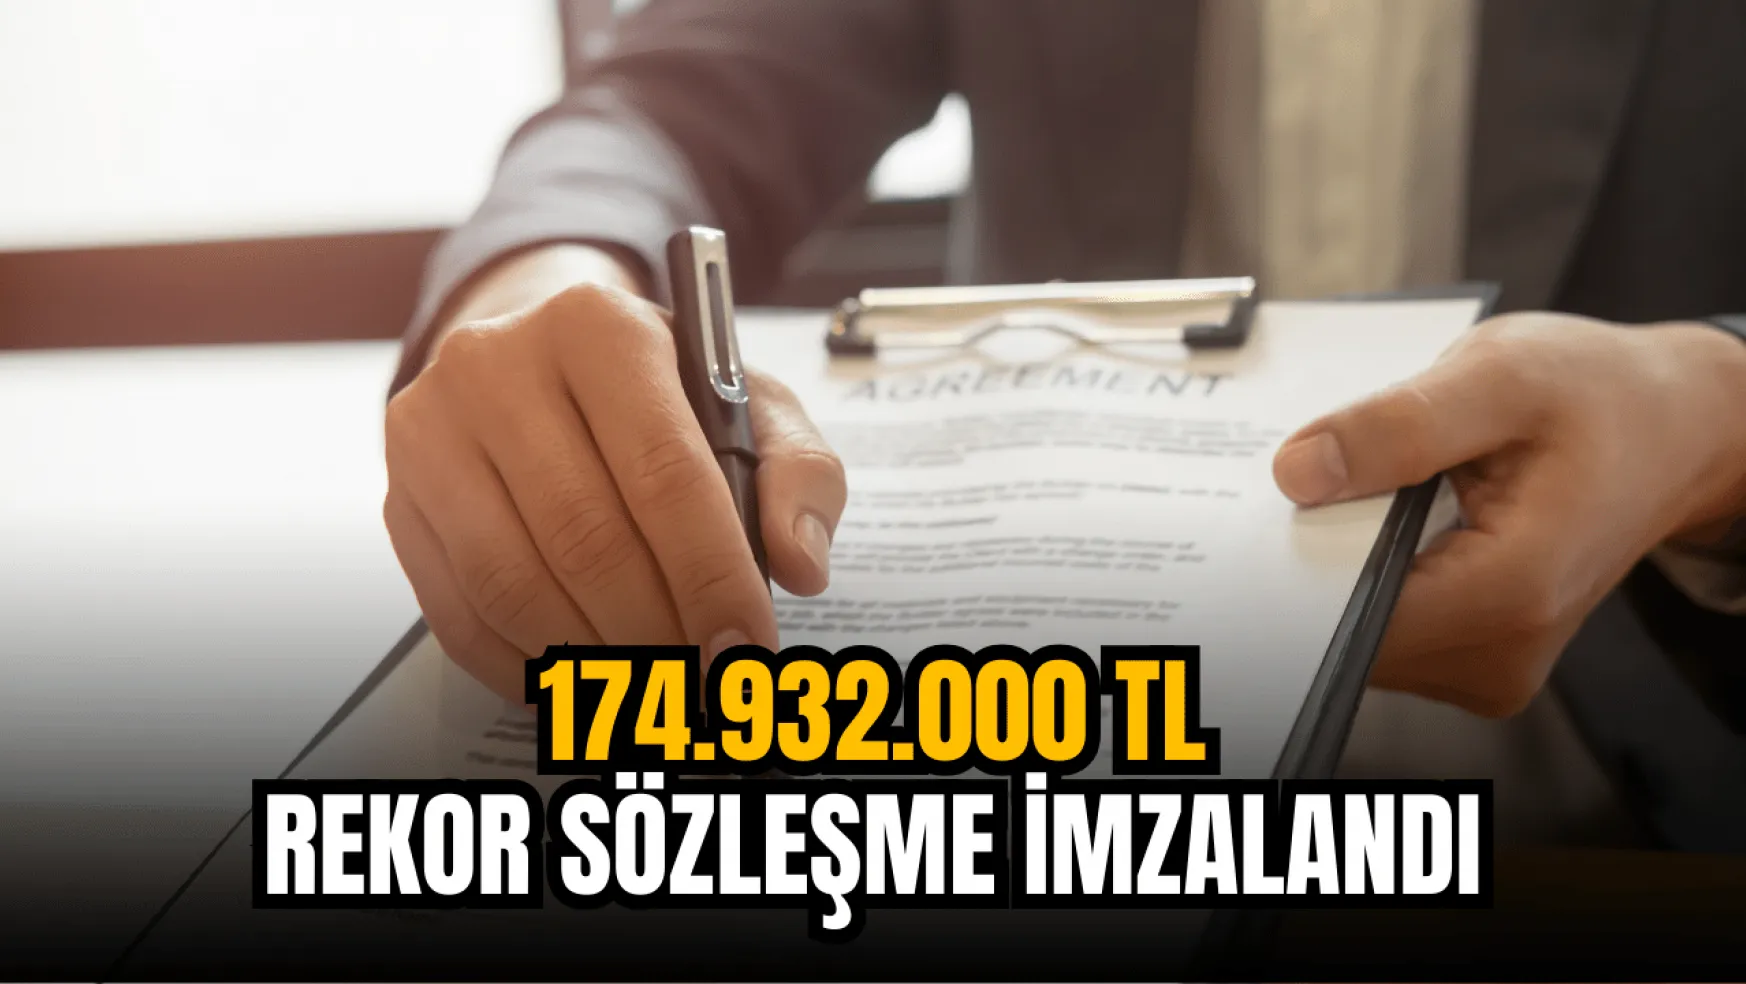 Borsanın dev teknoloji şirketi, 174.932.000 TL'lik sözleşmeyi imzaladı!